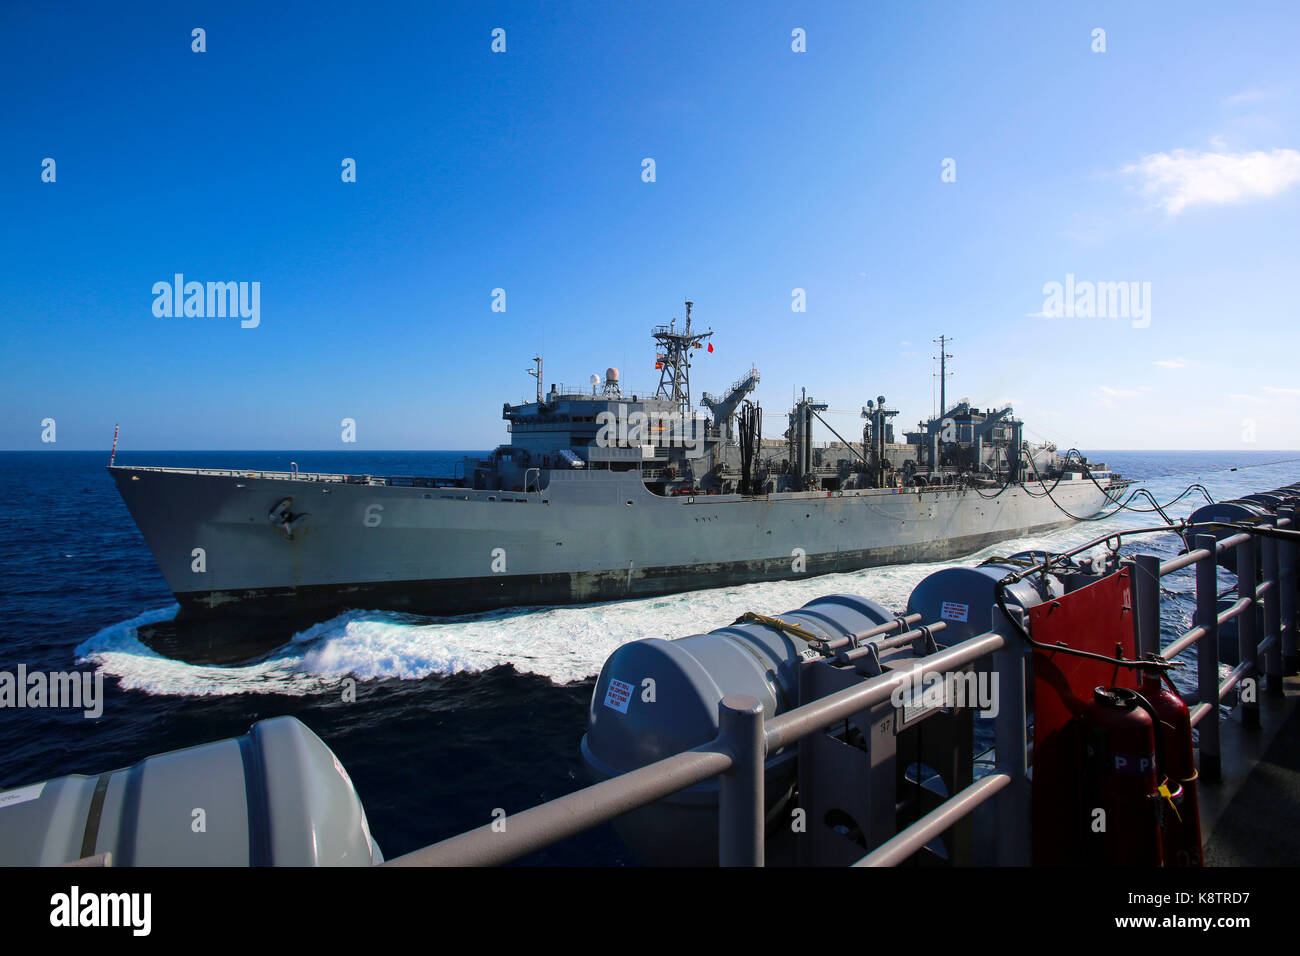 USNS alimentazione (T AOE 6), una flotta navale forza ausiliaria nave rifornimento, refuels USS Iwo Jima (LHD 7) al largo della costa di Key West, Fl., Sett. 17, 2017. Foto Stock